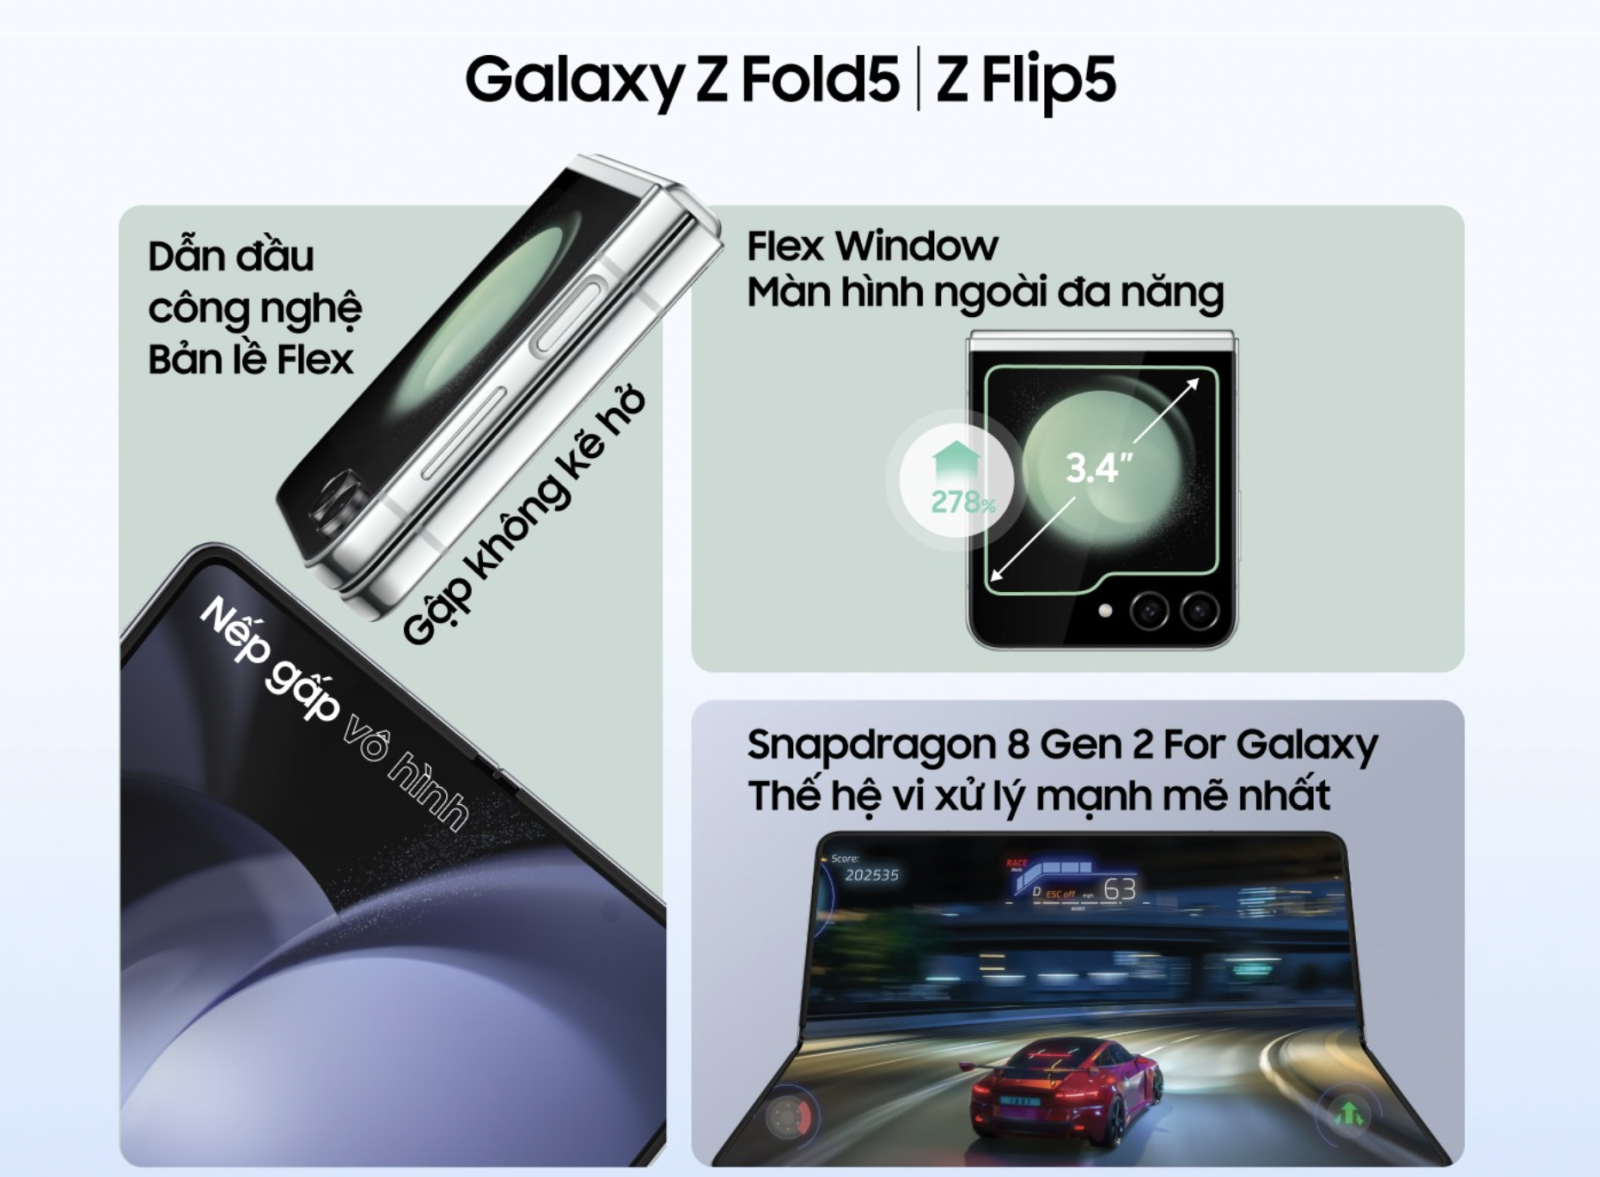 Samsung-zflip5-zfold5-oneway